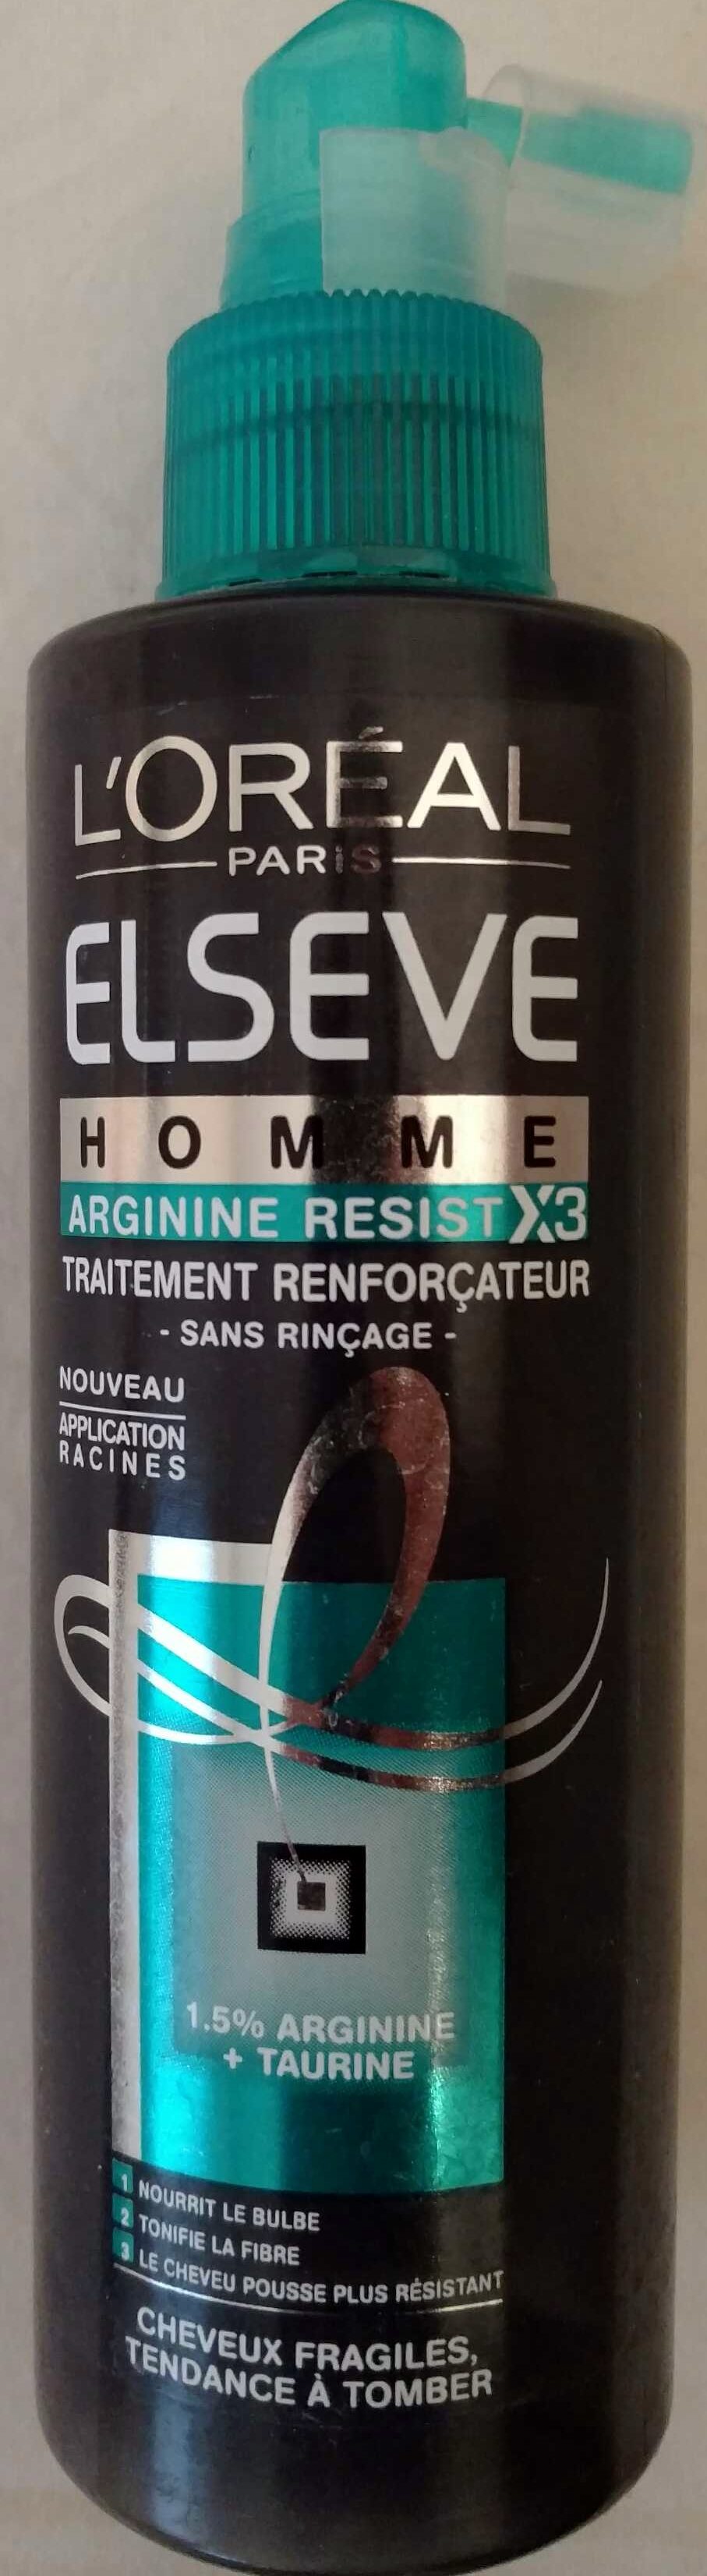 Arginine resist X3 - Traitement renforçateur - Produit - fr